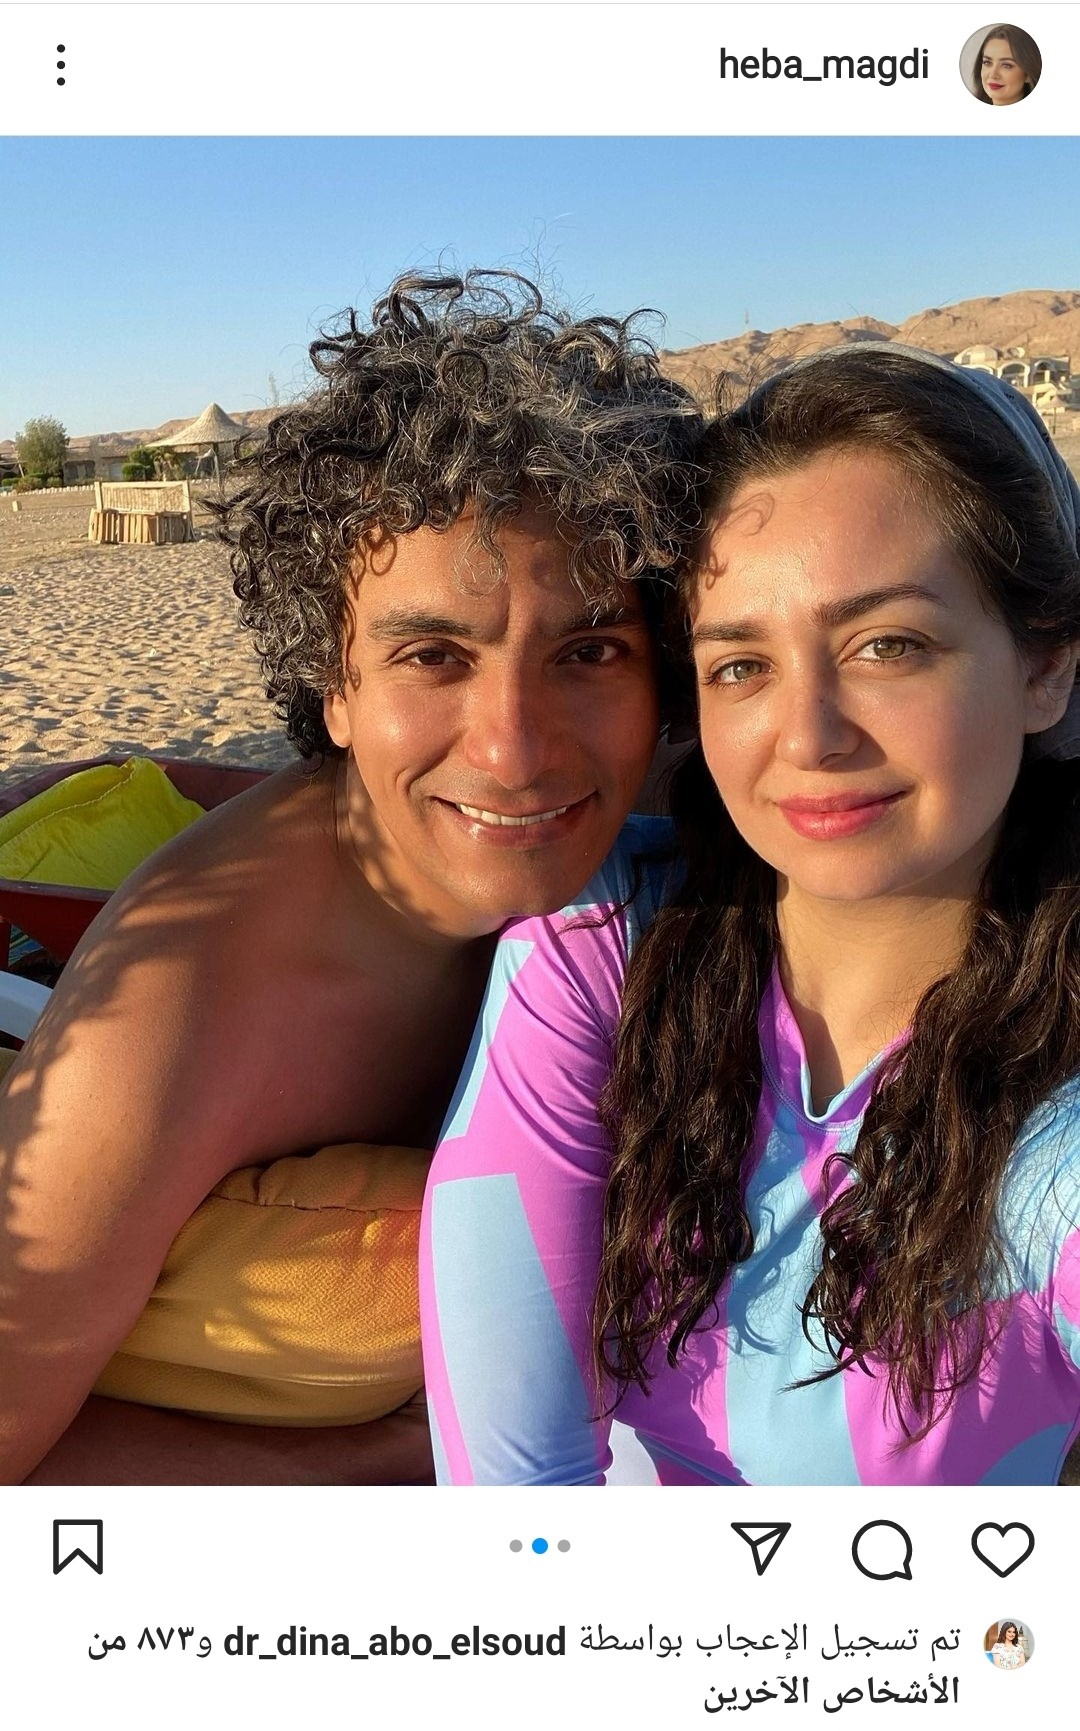 شاهد: هبة مجدي مع زوجها في أجواء رومانسية بالإجازة الصيفية